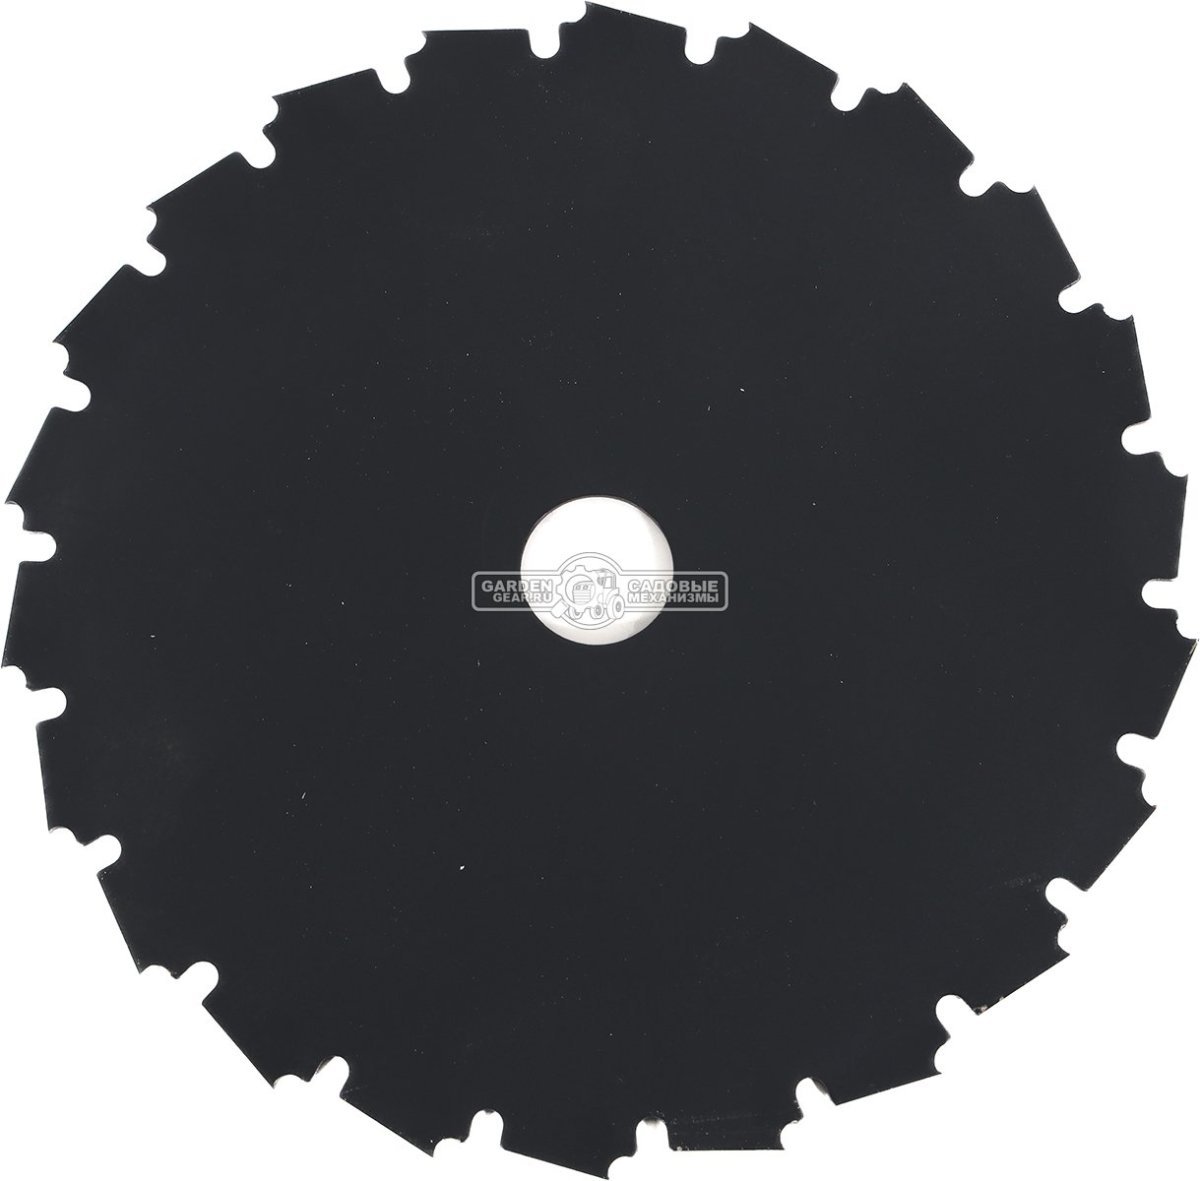 Диск кустореза Holzfforma 200-22 (посадочное отверстие 1&quot; / 25,4 мм, диаметр диска 200 мм.)